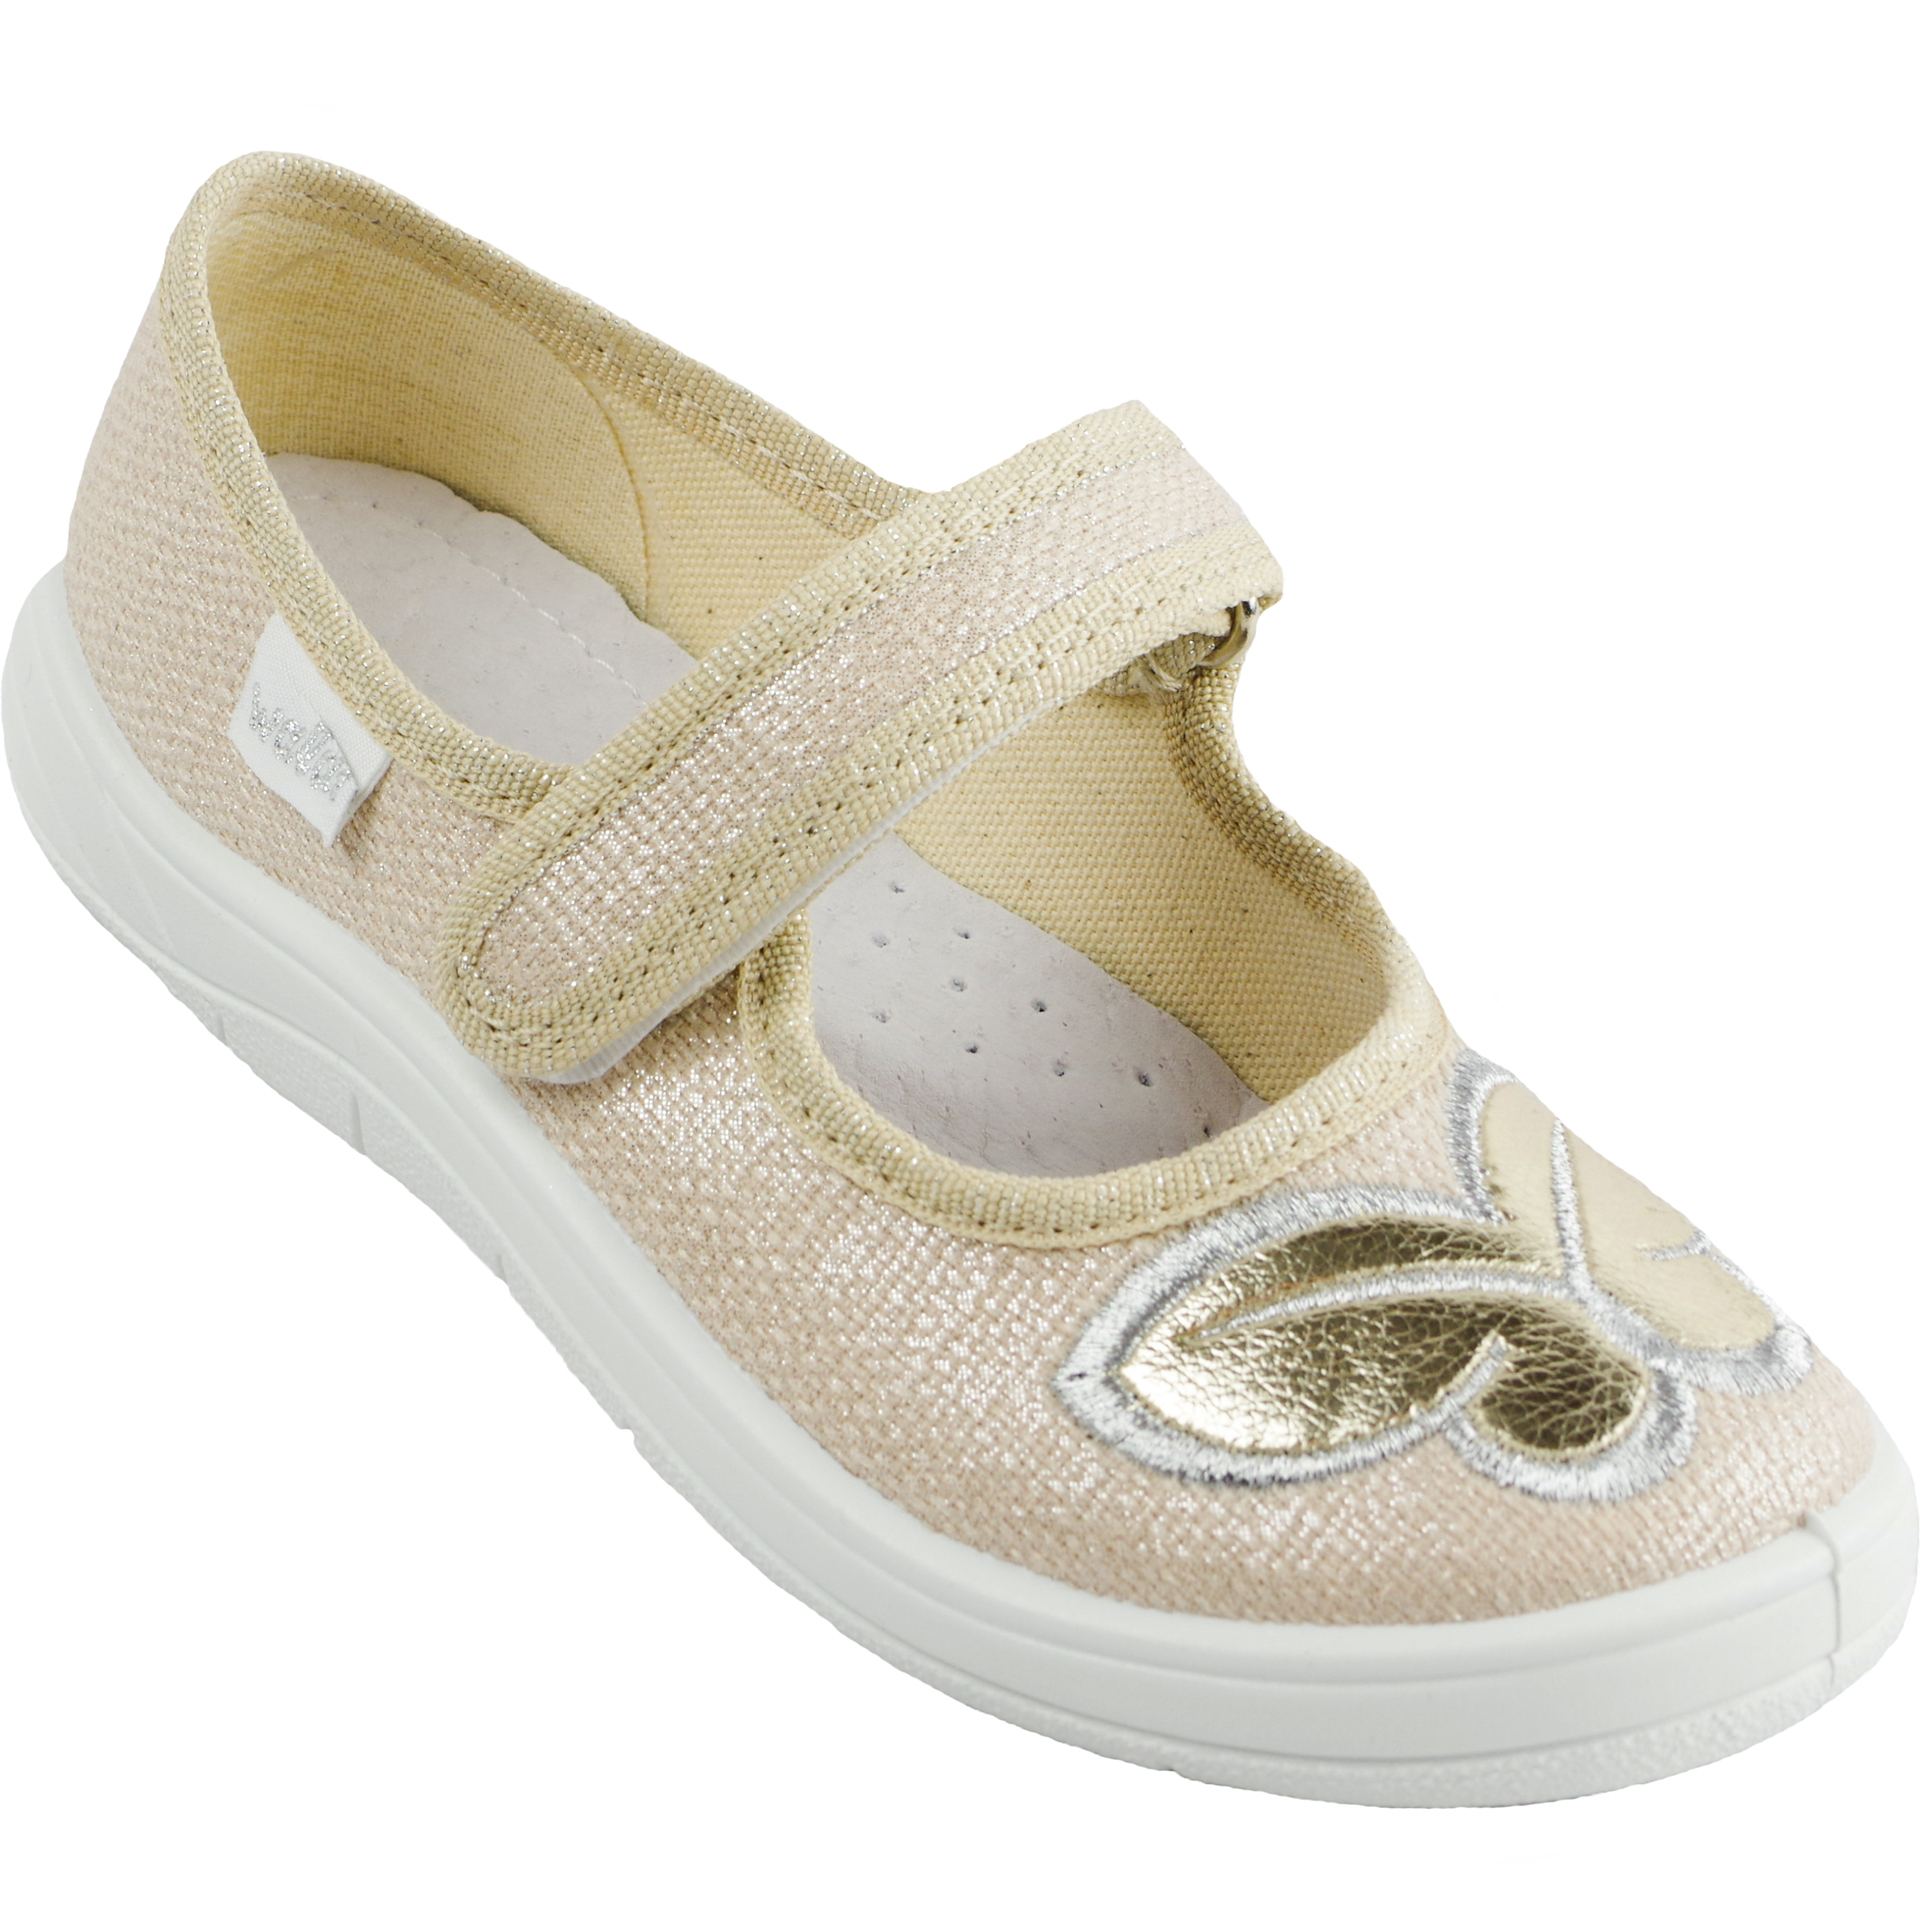 Текстильная обувь для девочек Тапочки детские (1927) цвет Бежевый 24-30 размеры – Sole Kids